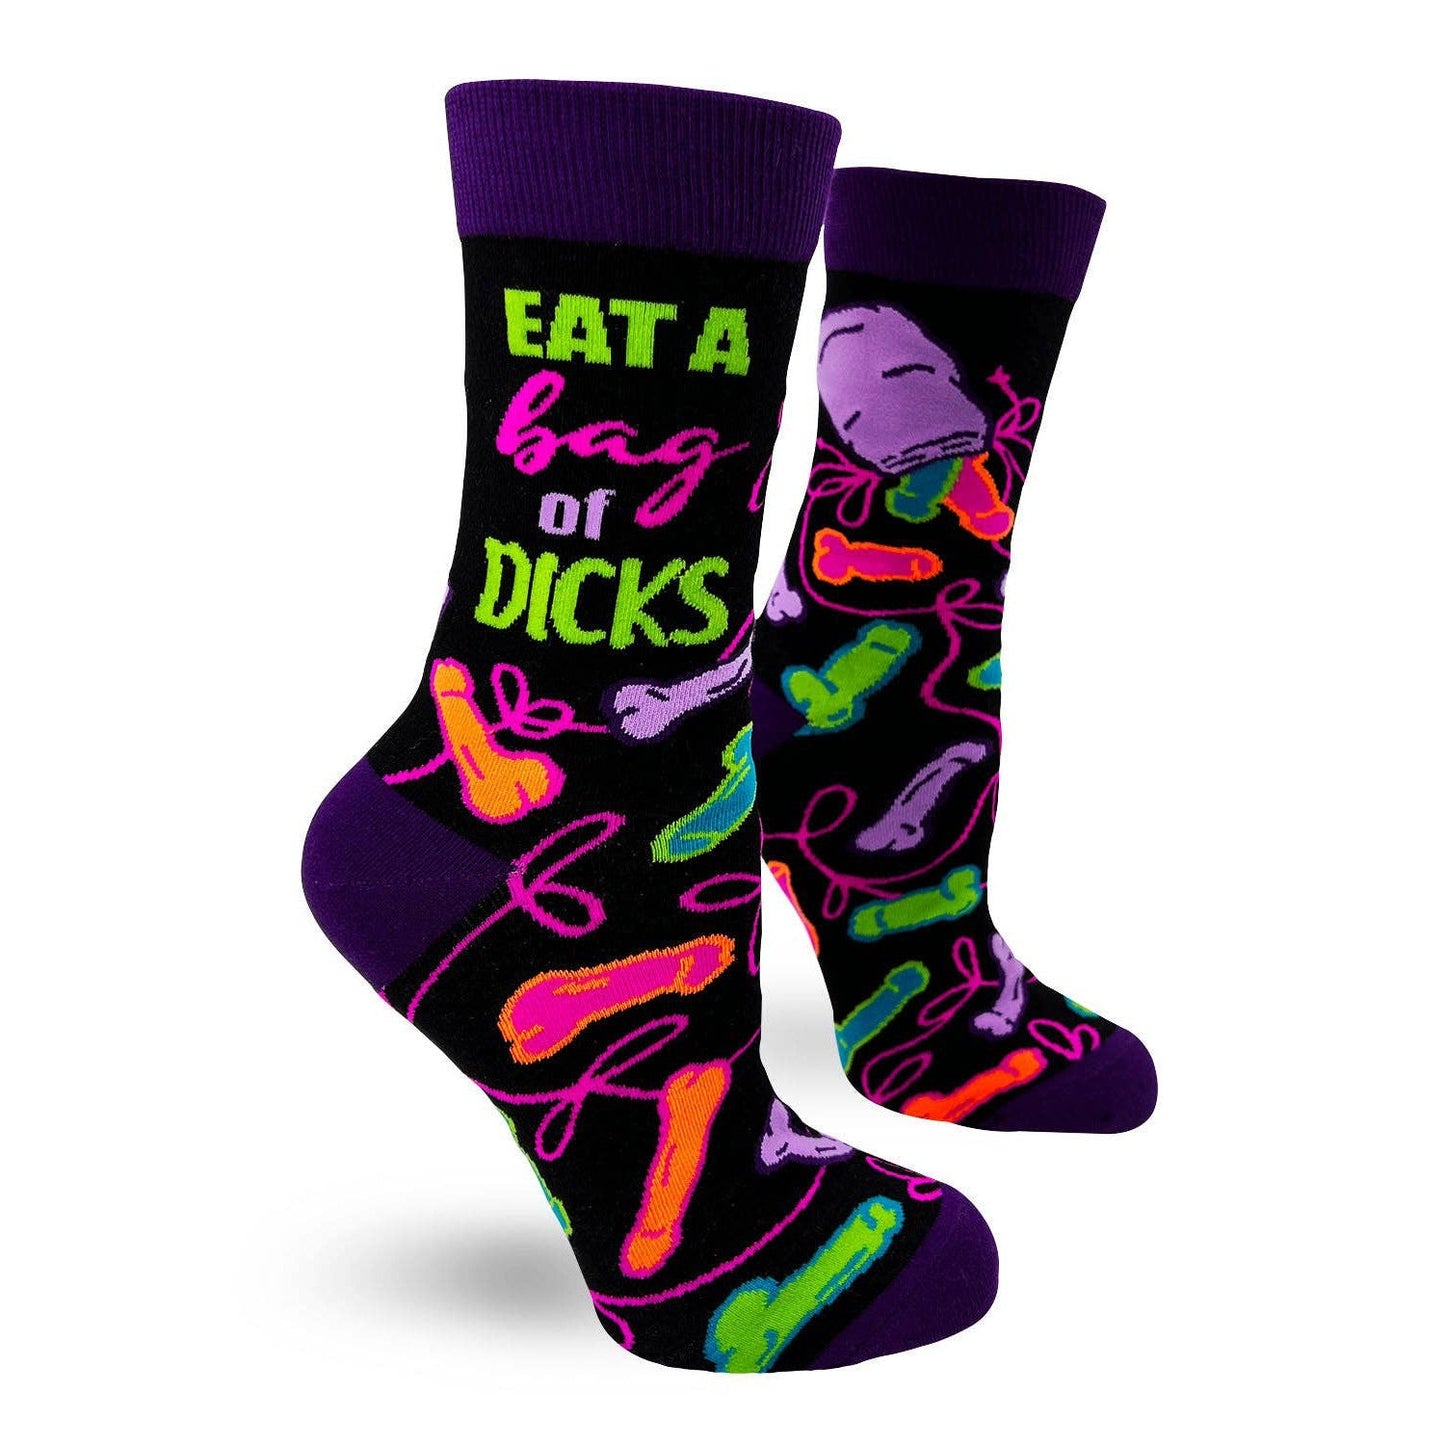 Eat a Bag of Dicks Sassy Women's Novelty Crew Socks | Ladies Multicolor Socks